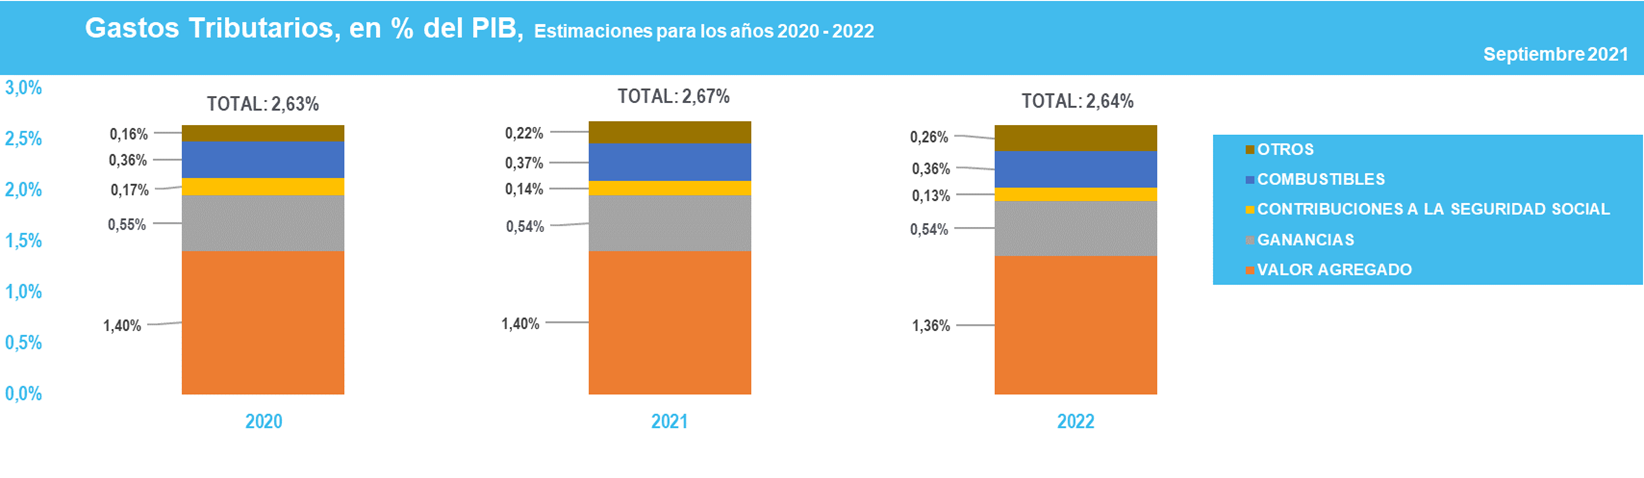 Informe sobre Gastos Tributarios. Años 2020 - 2022